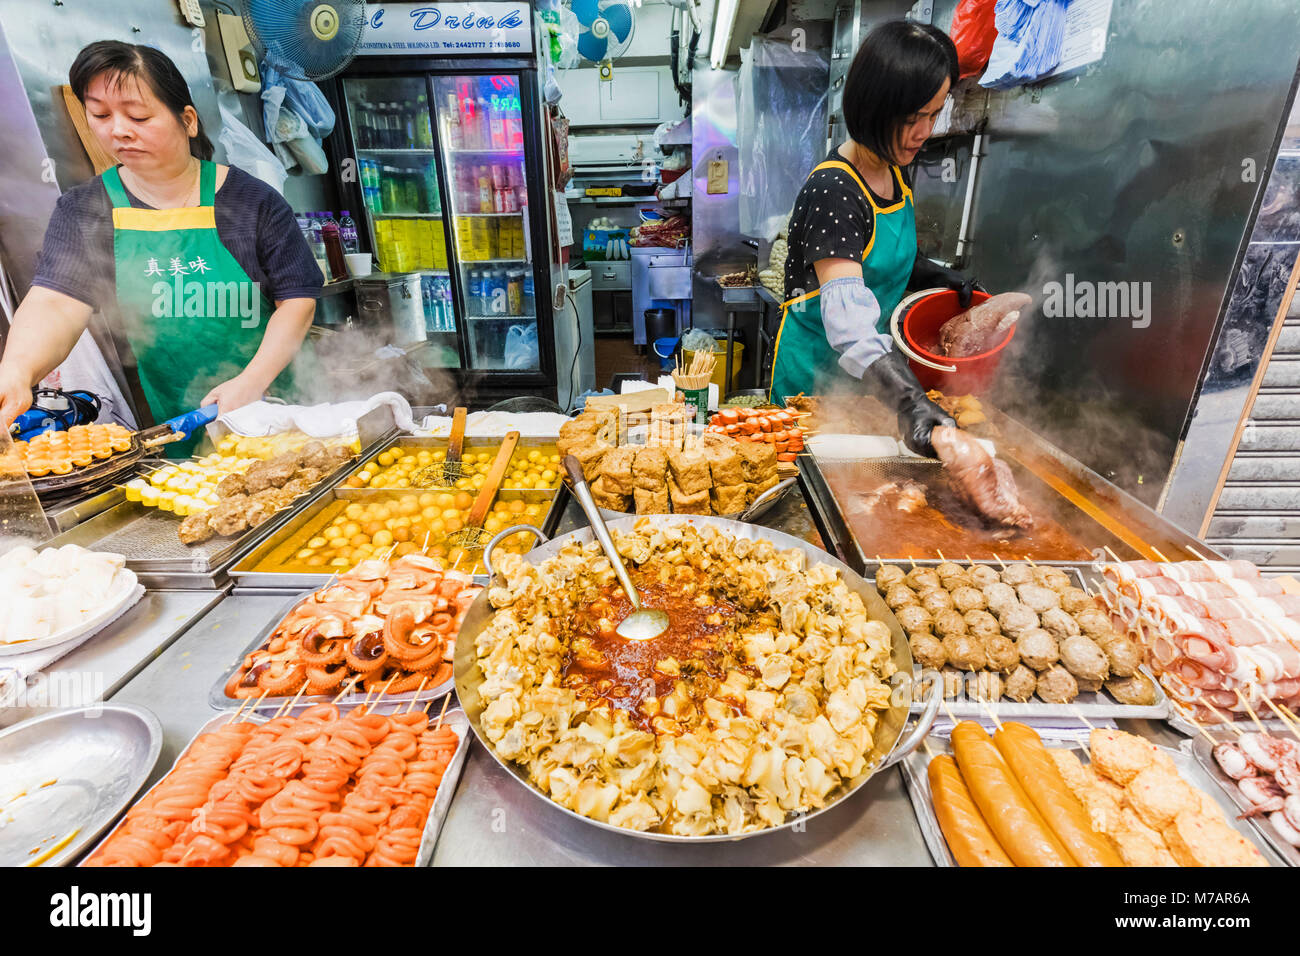 China, Hong Kong, Mong Kok, comida de la calle Foto de stock